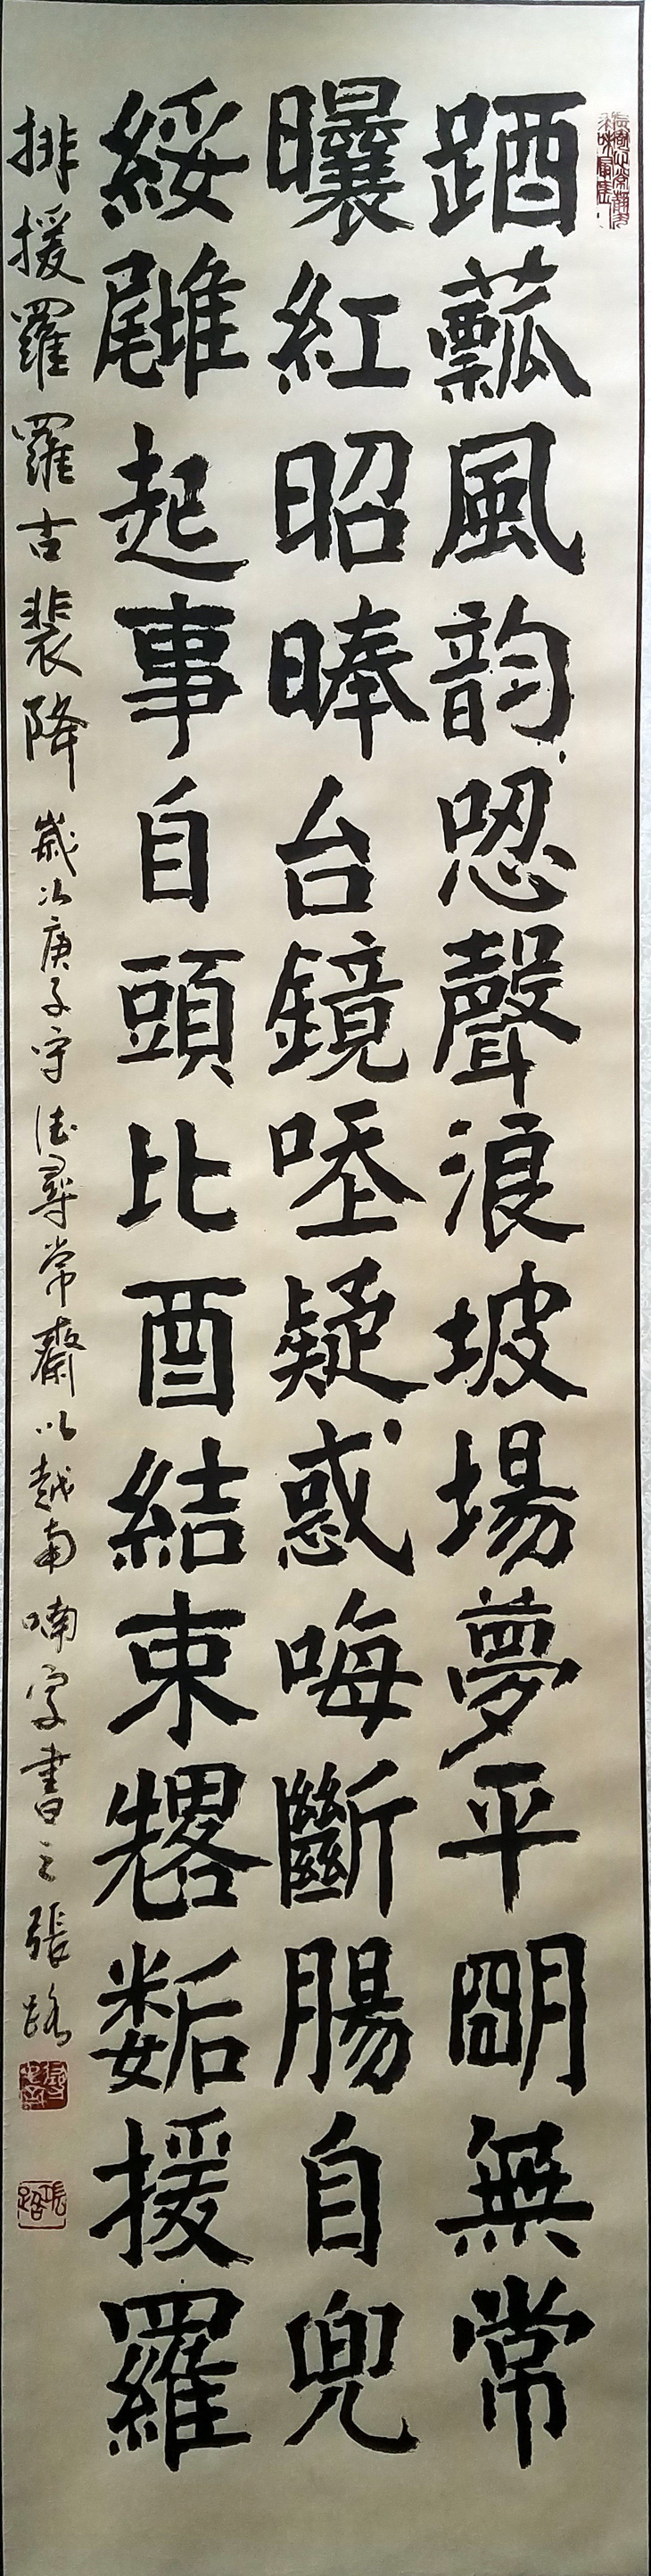 Xem triển lãm thư pháp của Trương Lộ gặp thơ Lê Quý Đôn, Bùi Giáng, Bảo Định Giang - Ảnh 6.